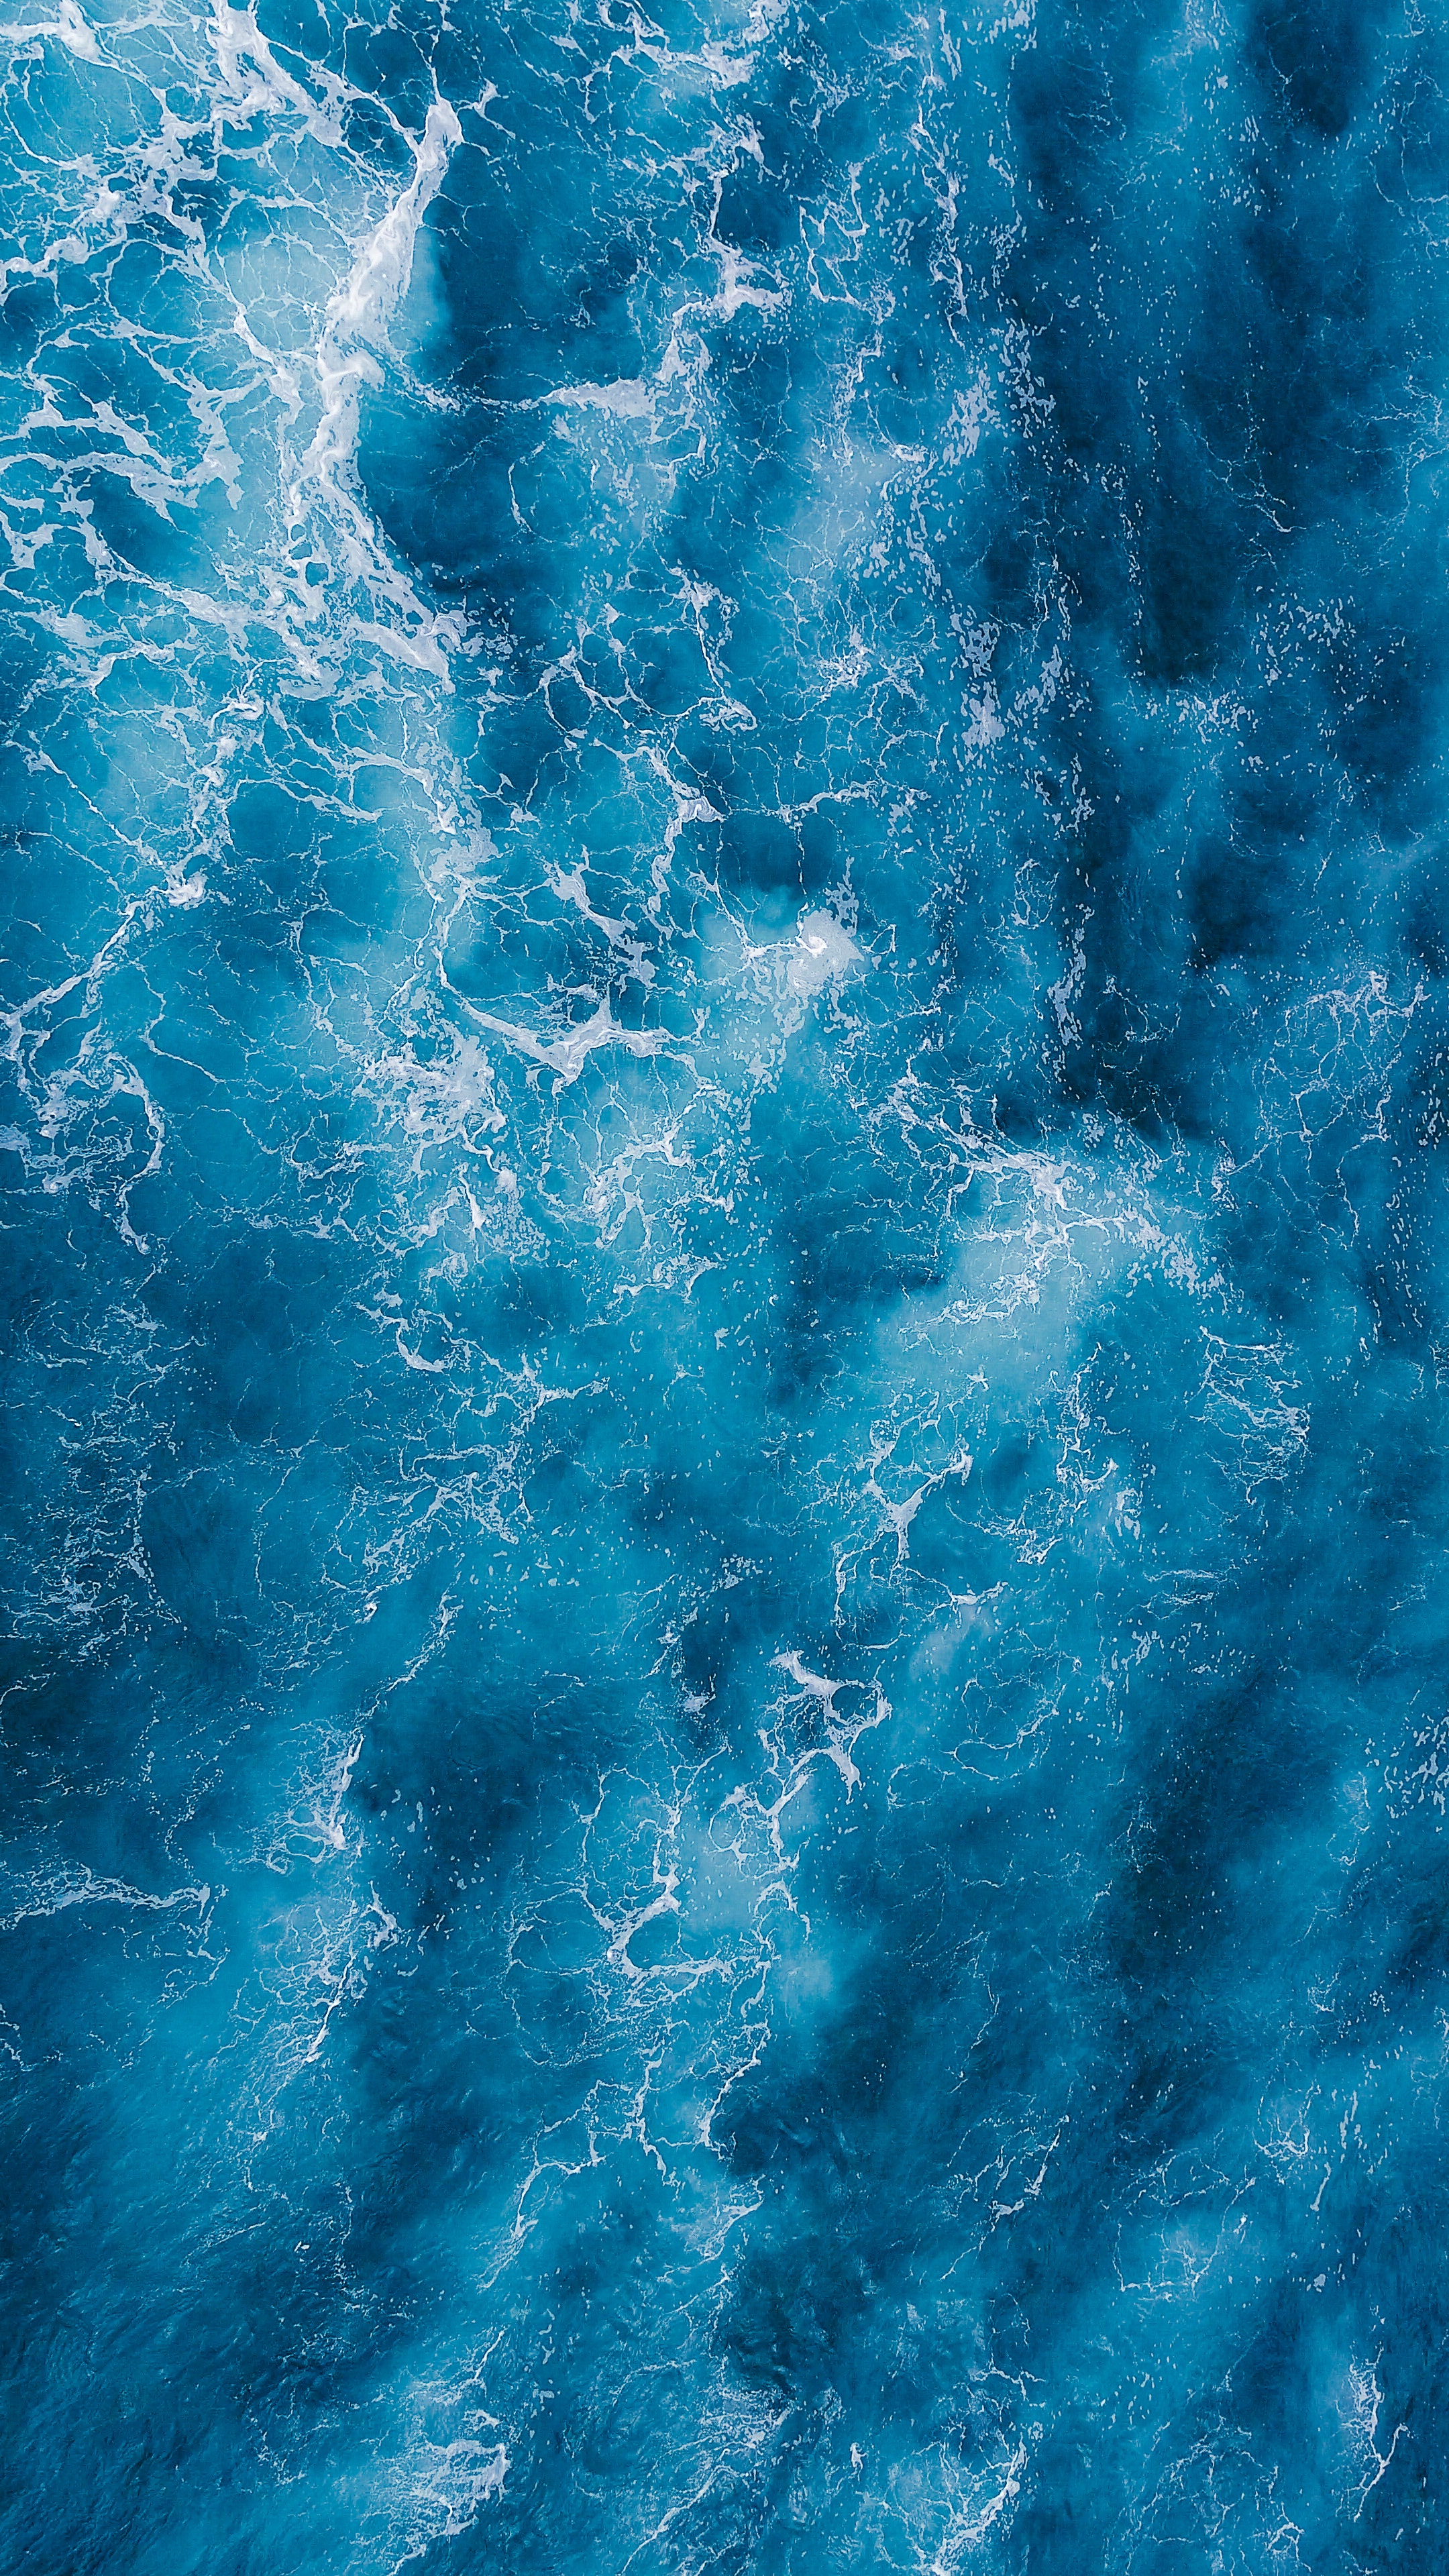 Ocean Wallpaper Photo, Download Free Ocean Wallpaper & HD Image